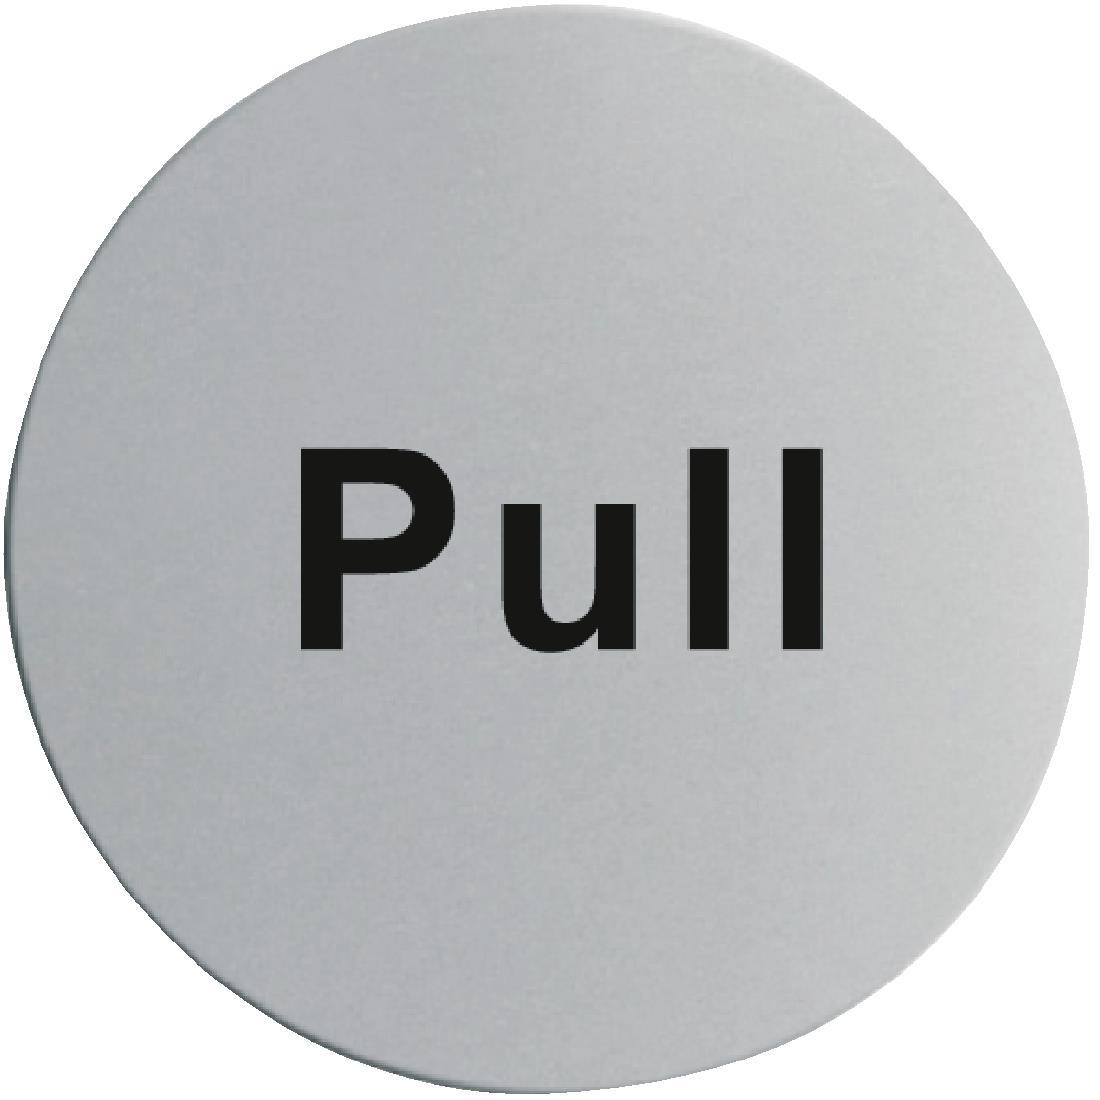 Stainless Steel Door Sign - Pull - U064  - 1